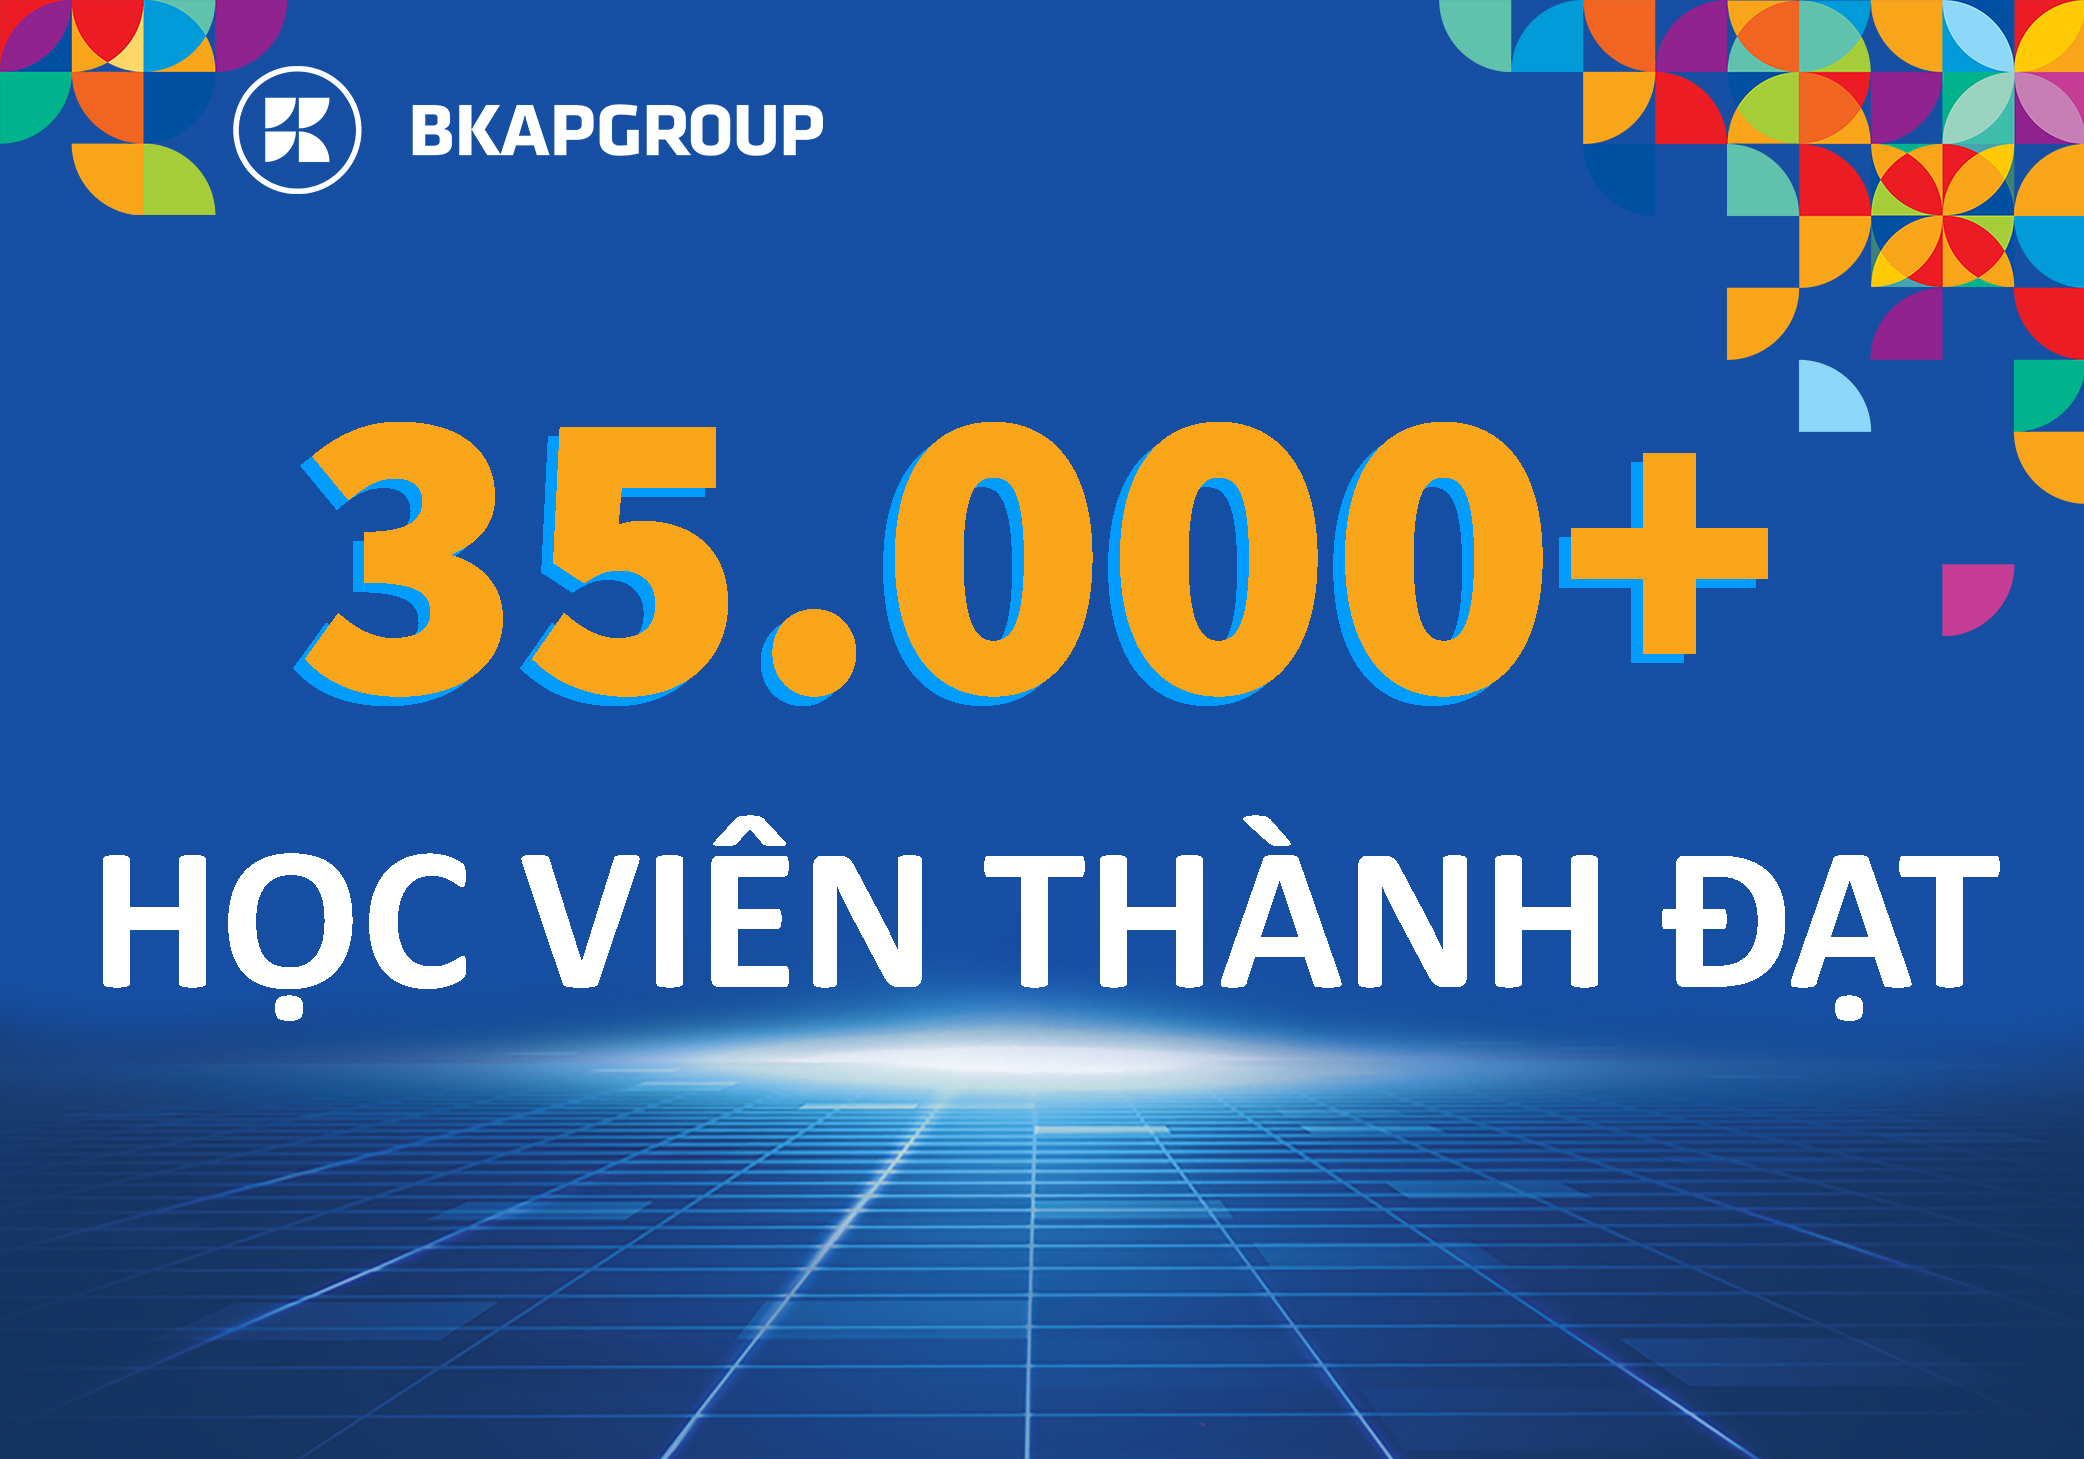 35000 học viên thành đạt của bkapgroup